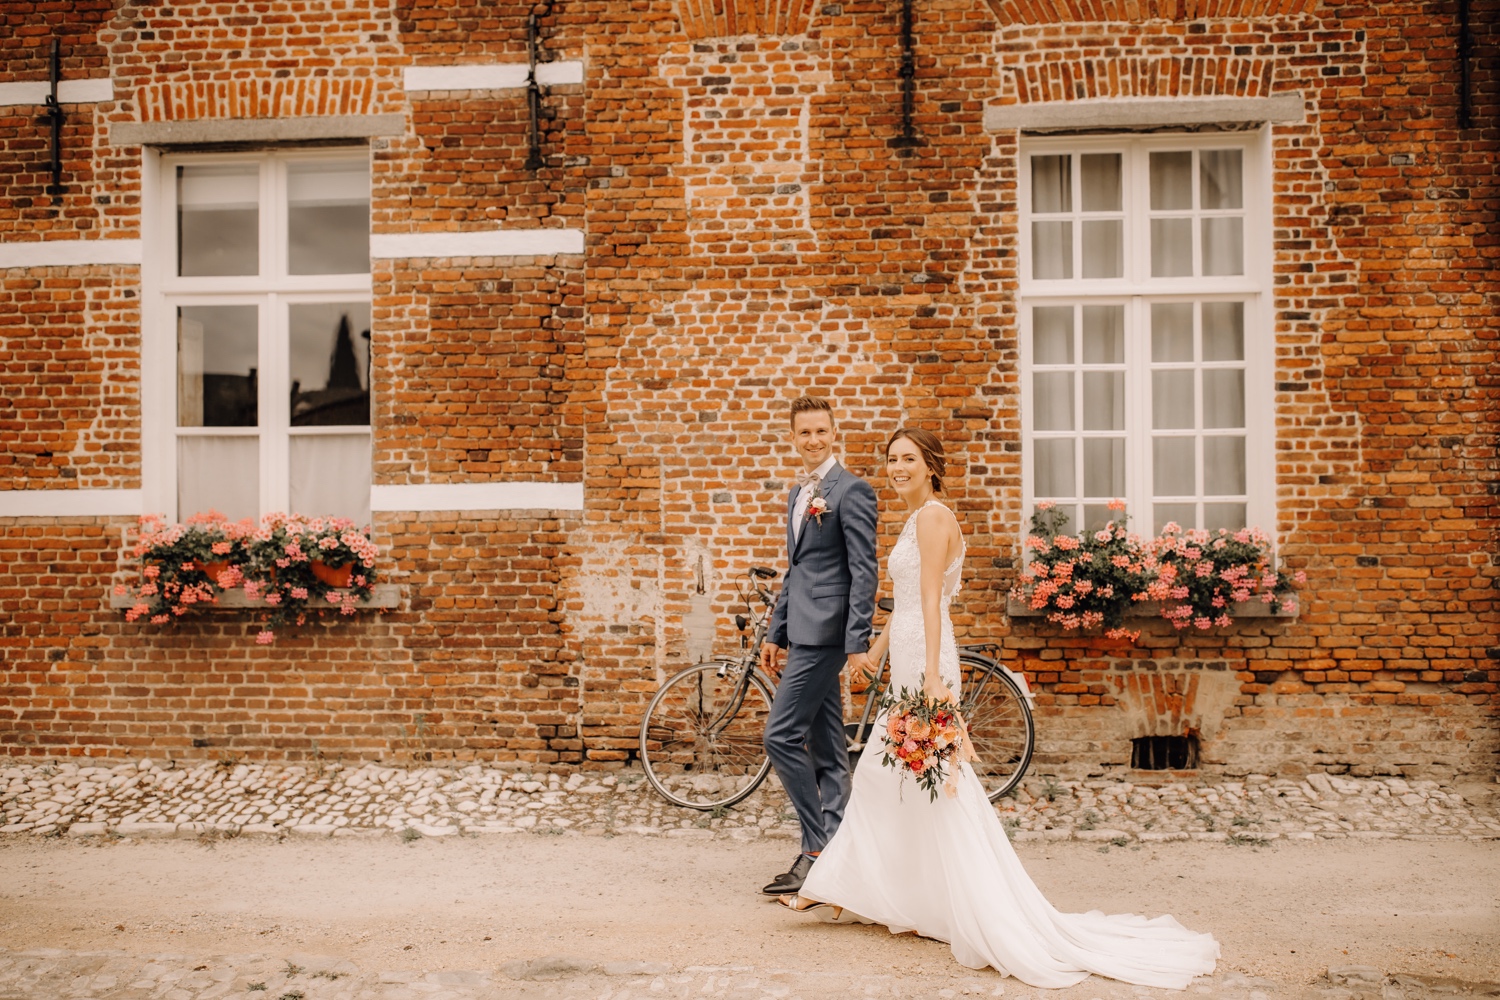 Huwelijksfotograaf limburg - bruidspaar wandelt door het begijnhof hand in hand